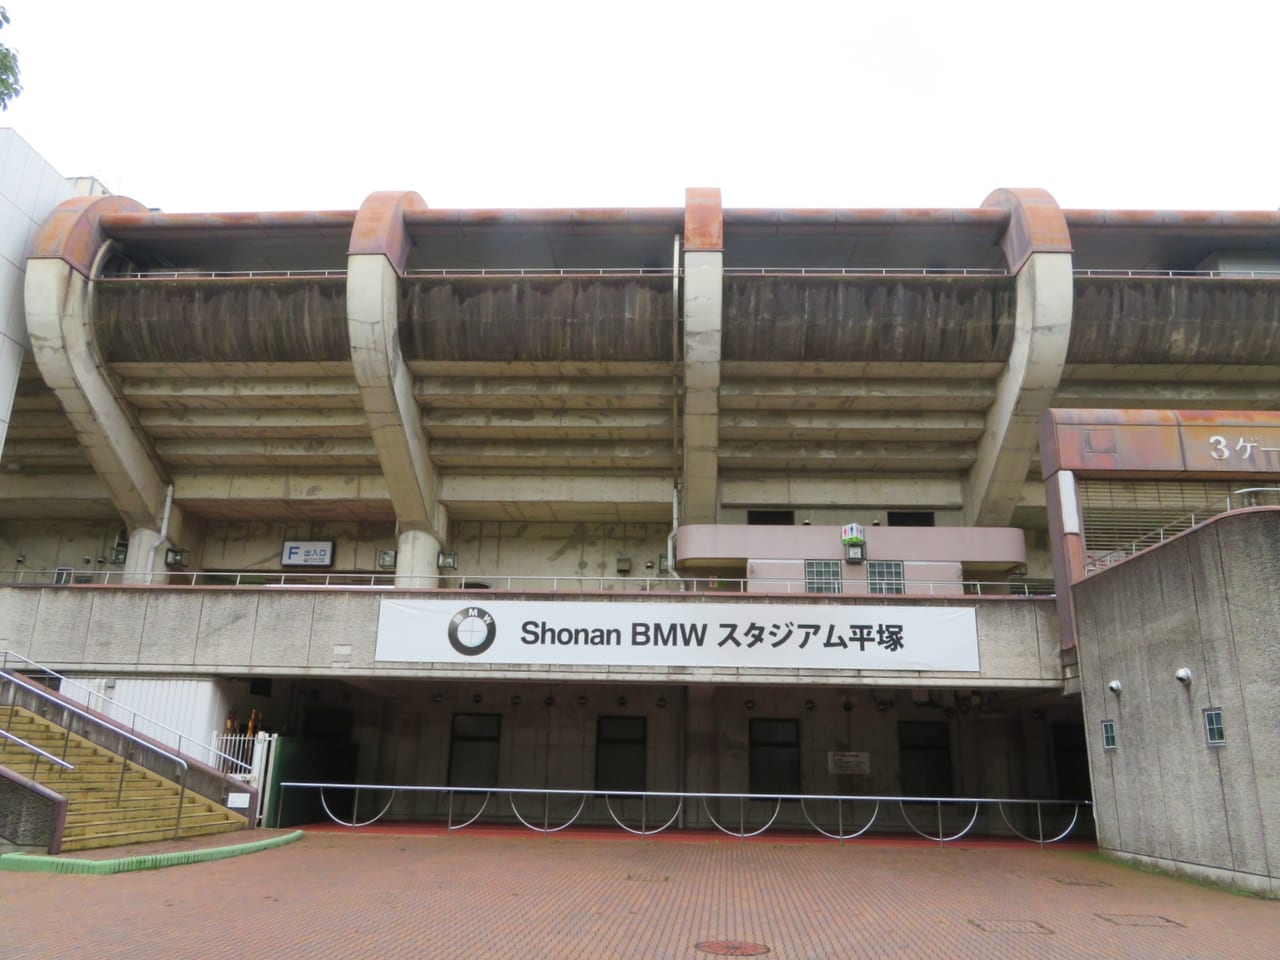 平塚市 湘南ベルマーレのホームグラウンド Shonan Bmw スタジアム平塚 の名称が21年2月1日から変更 現在 新ネーミングライツパートナーを募集中 号外net 平塚市